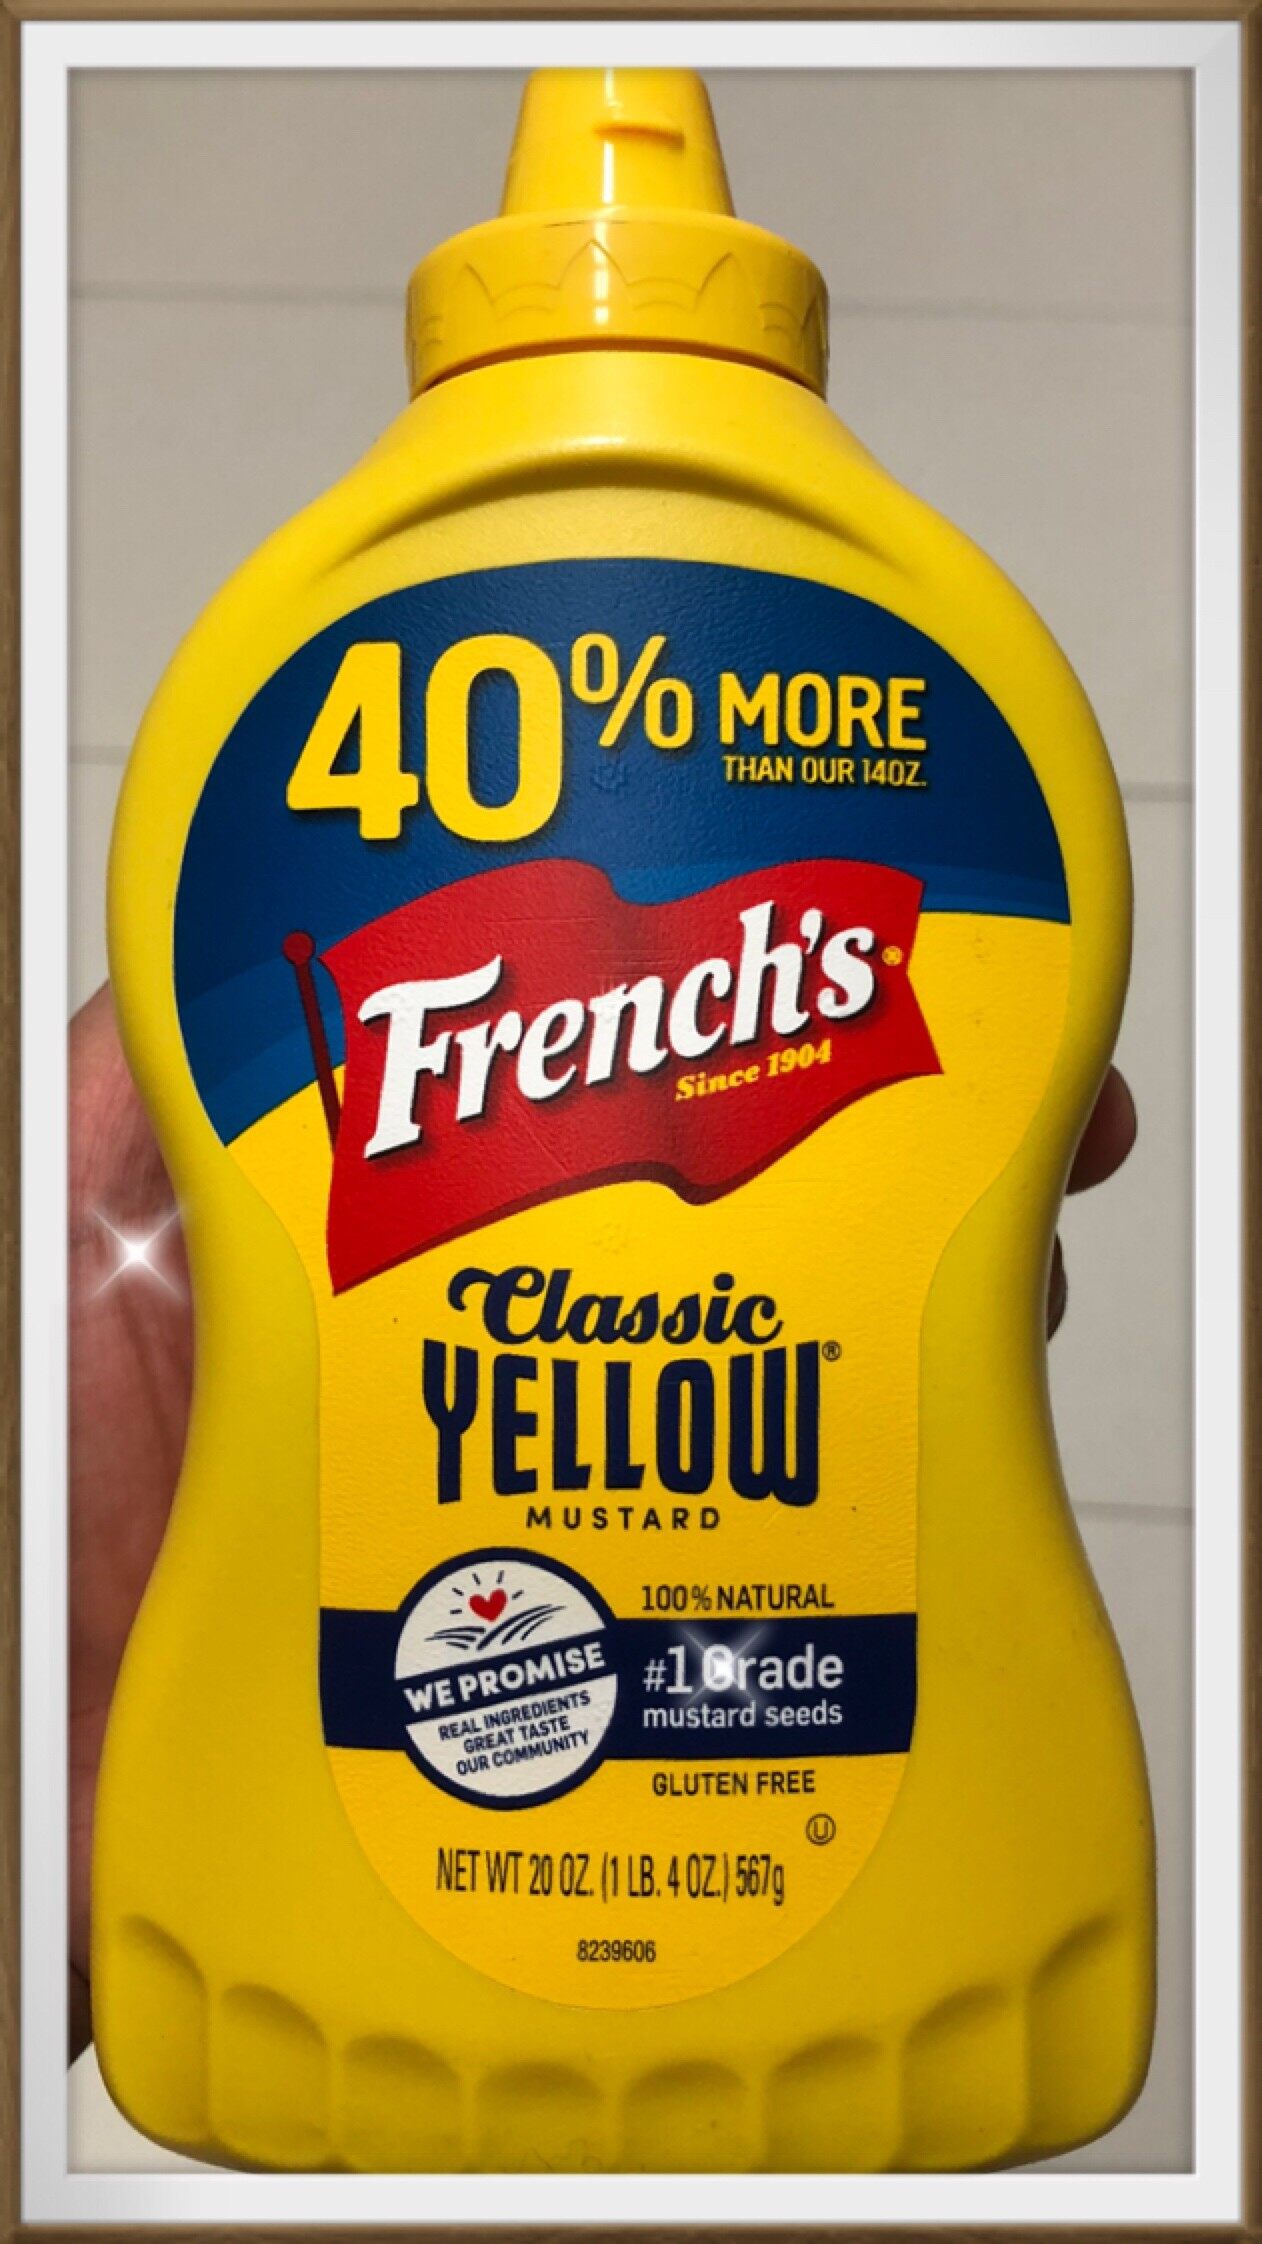 French's Classic Yellow Mustard (Gluten-free) 567g. เฟร้นช์ส คลาสสิค เยลโล่ มัสตาร์ด กลูเตนฟรี 567กรัม